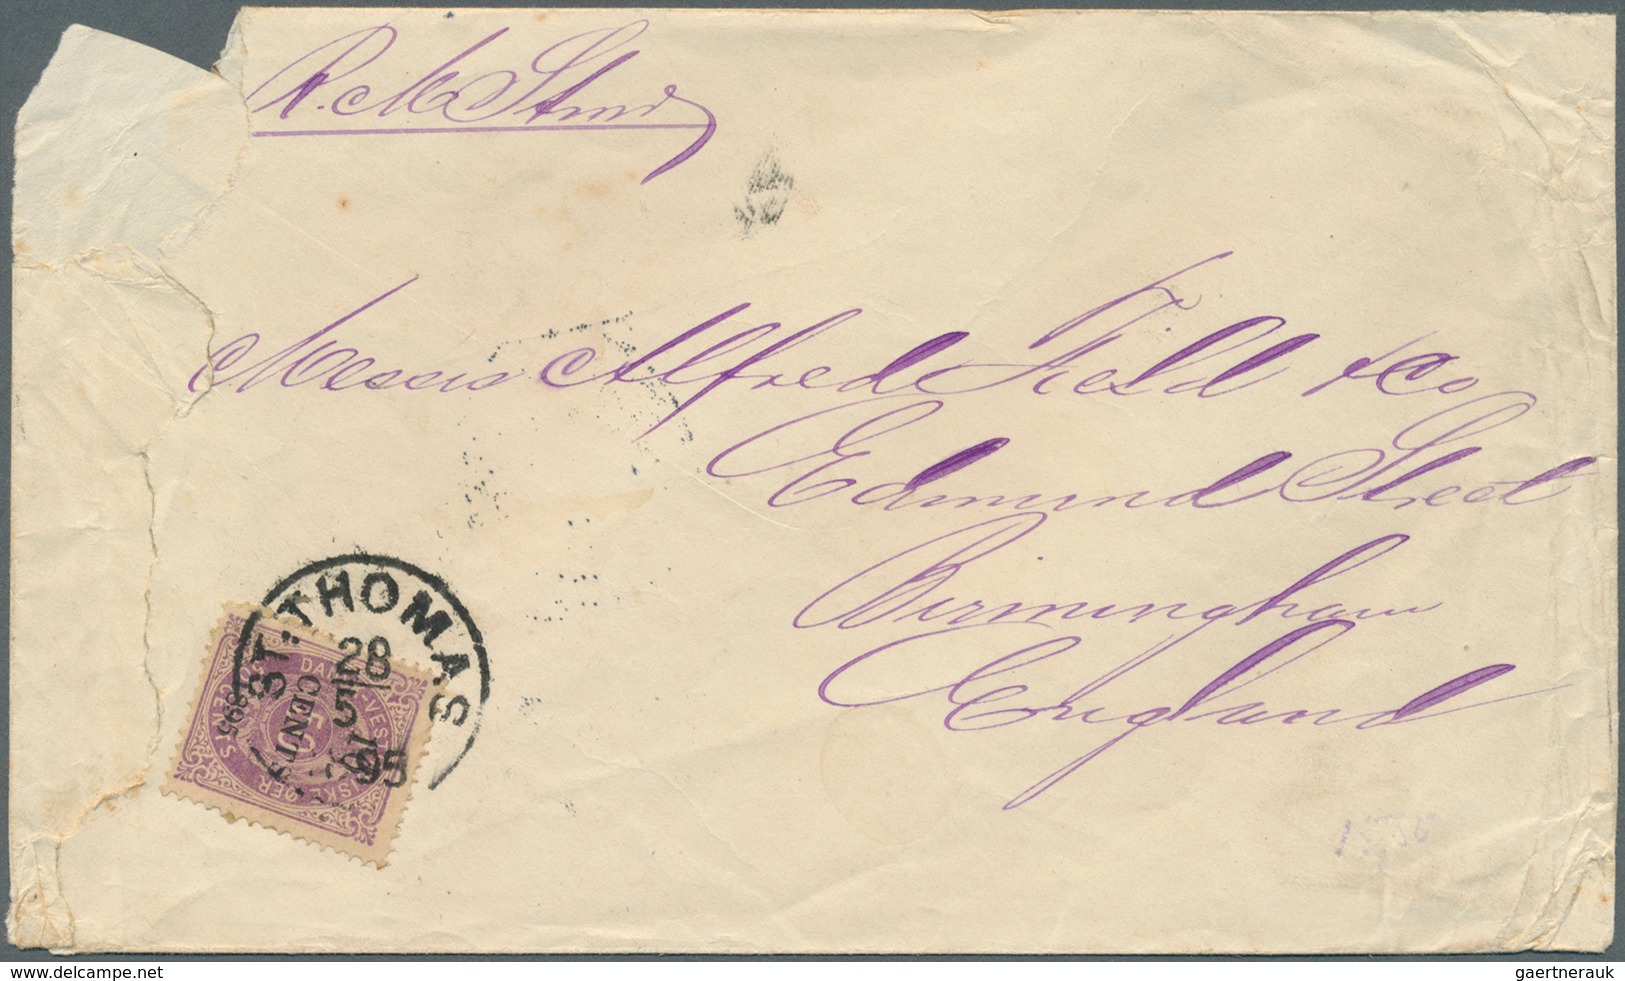 Dänisch-Westindien: 1895, 10 C./50 C. Tied "ST. THOMAS 28/5 1895" On Cover To England W. June 12 Bir - Dänische Antillen (Westindien)